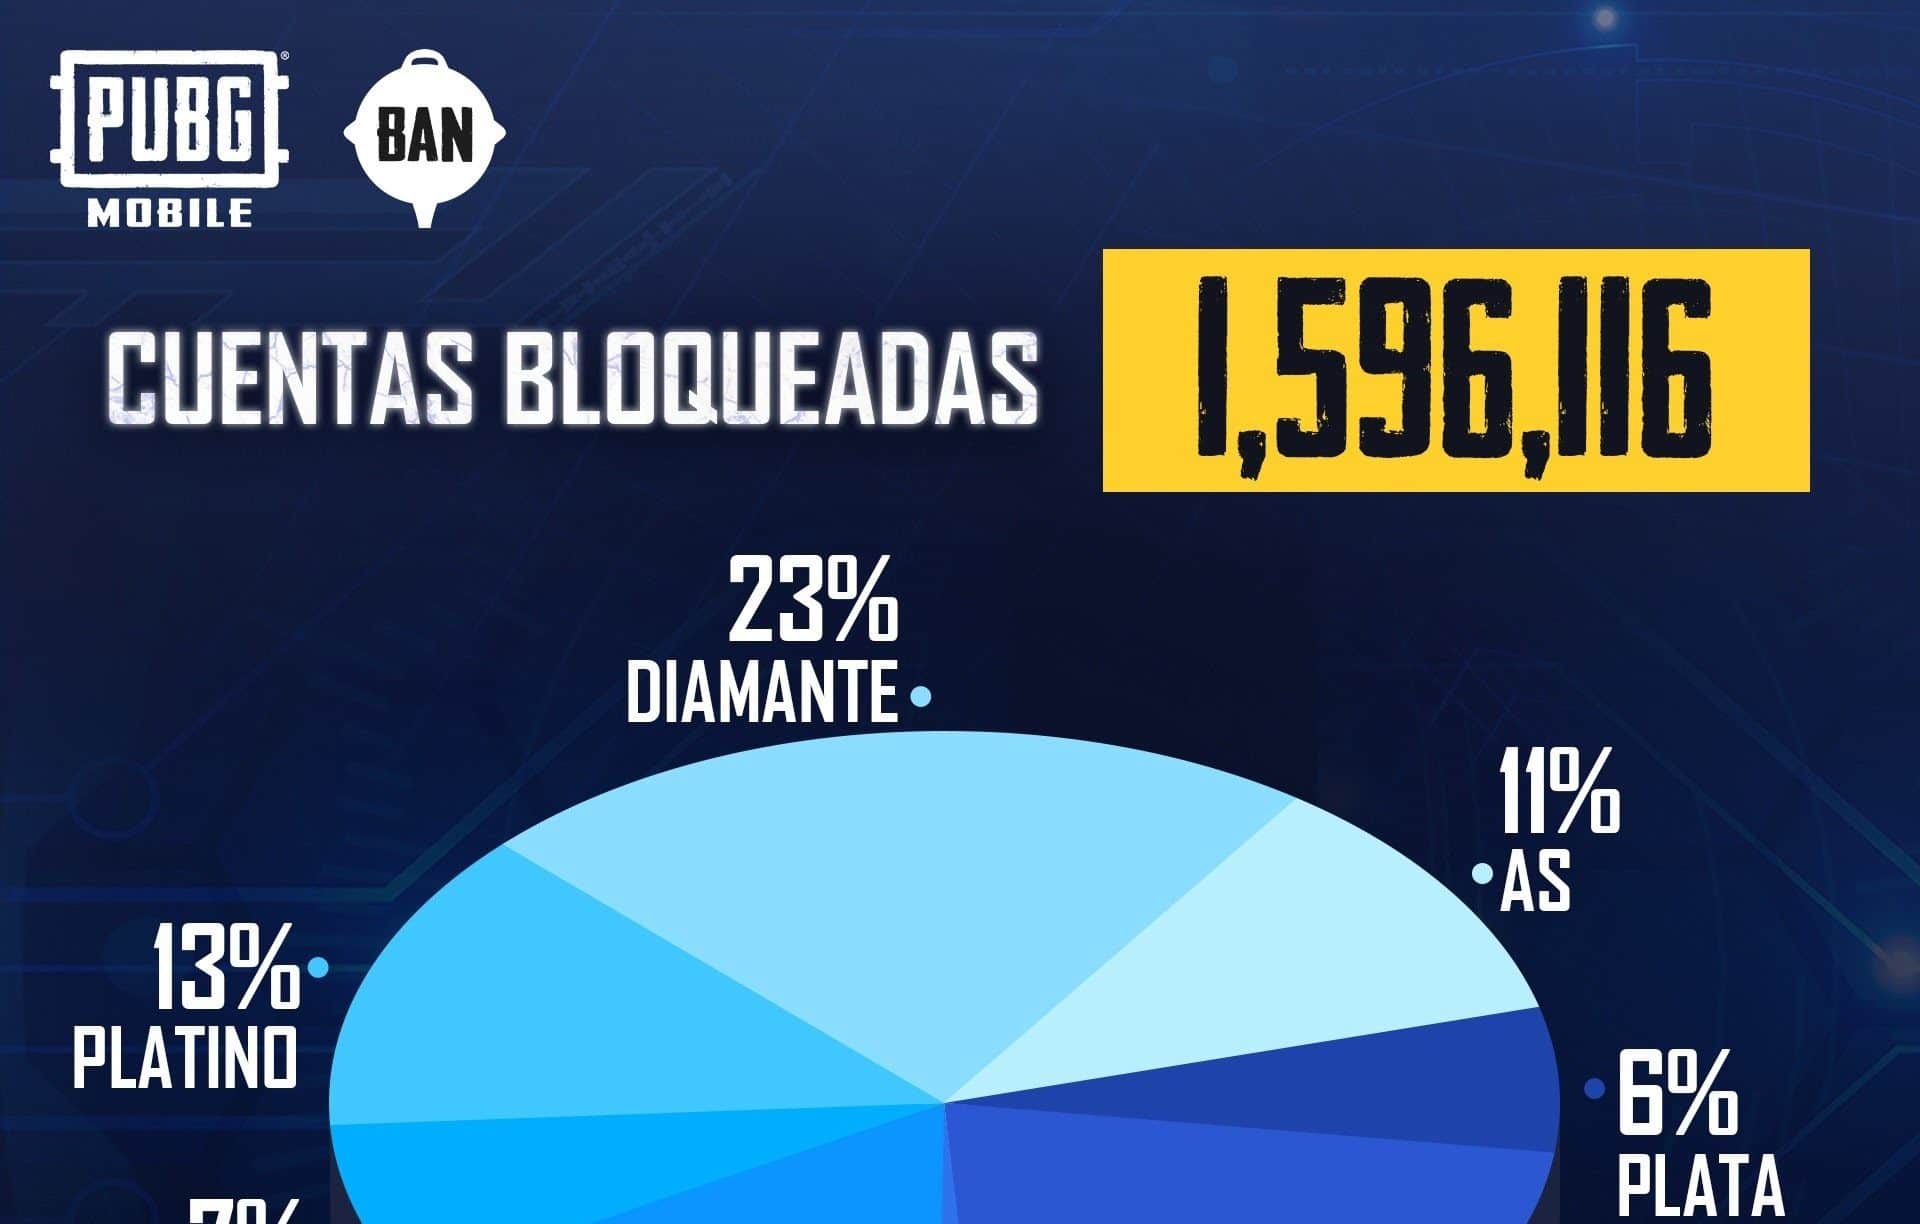 PUBG MOBILE bloqueó más de 1.5 millones de cuentas en una semana como parte de su programa Ban Pan, GamersRD